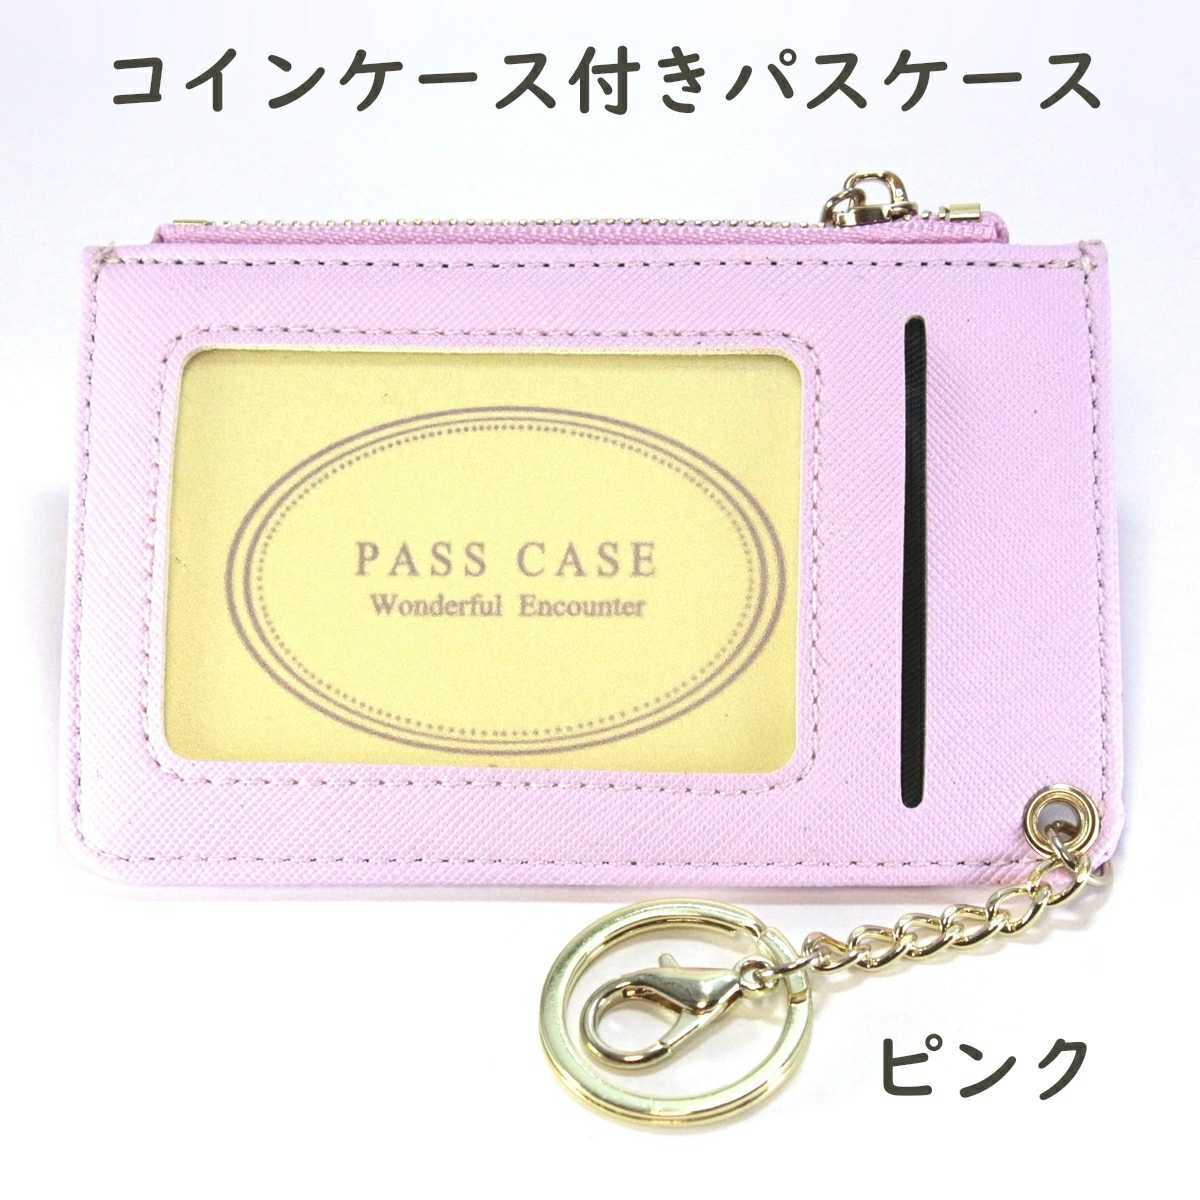 新品 パスケース カードケース 定期入れ コインケース ミニ財布 ピンク 桃色